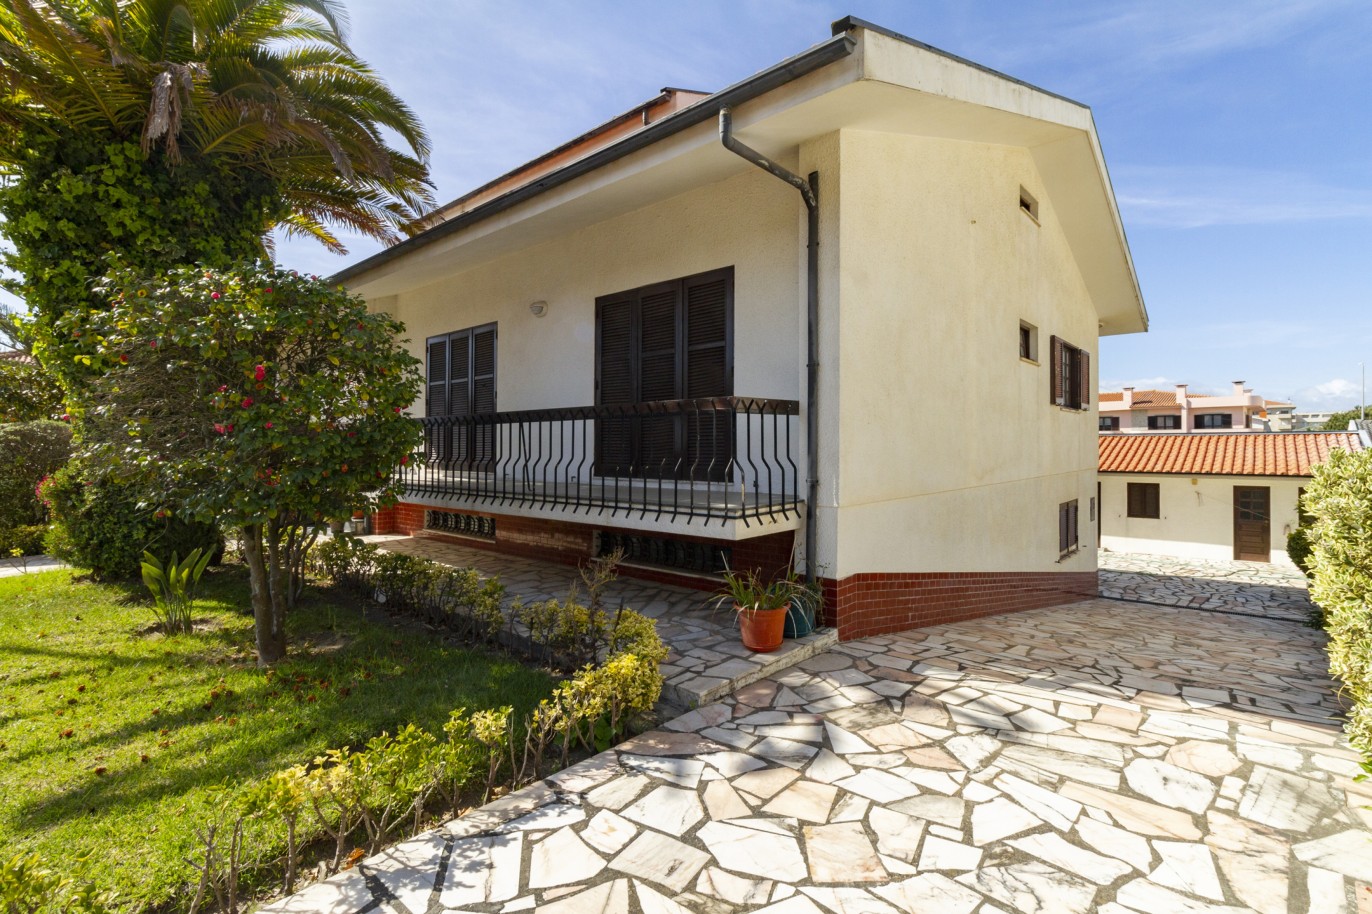 Freistehende Villa mit Garten, zu verkaufen, in der Nähe von Esmoriz Strand, Ovar, Nord Portugal_222791